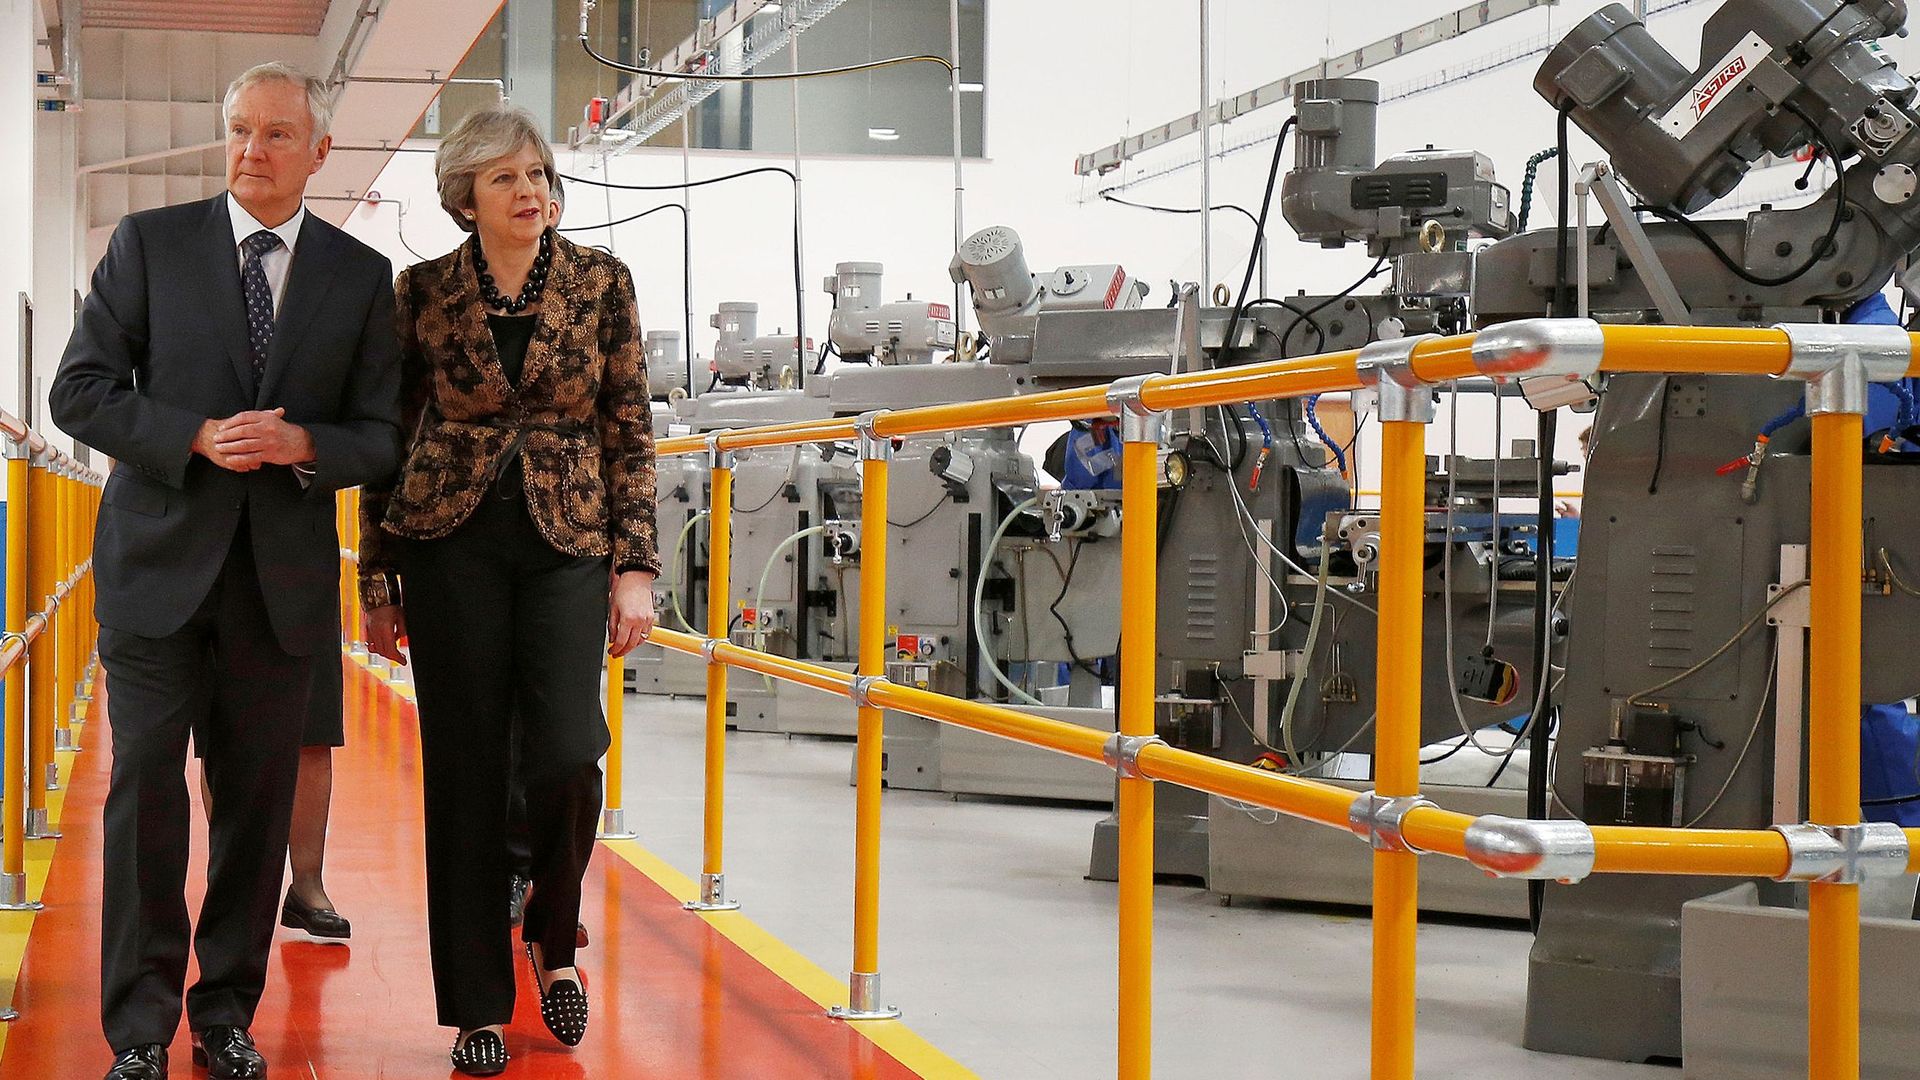 Theresa May visits an engineering facility.